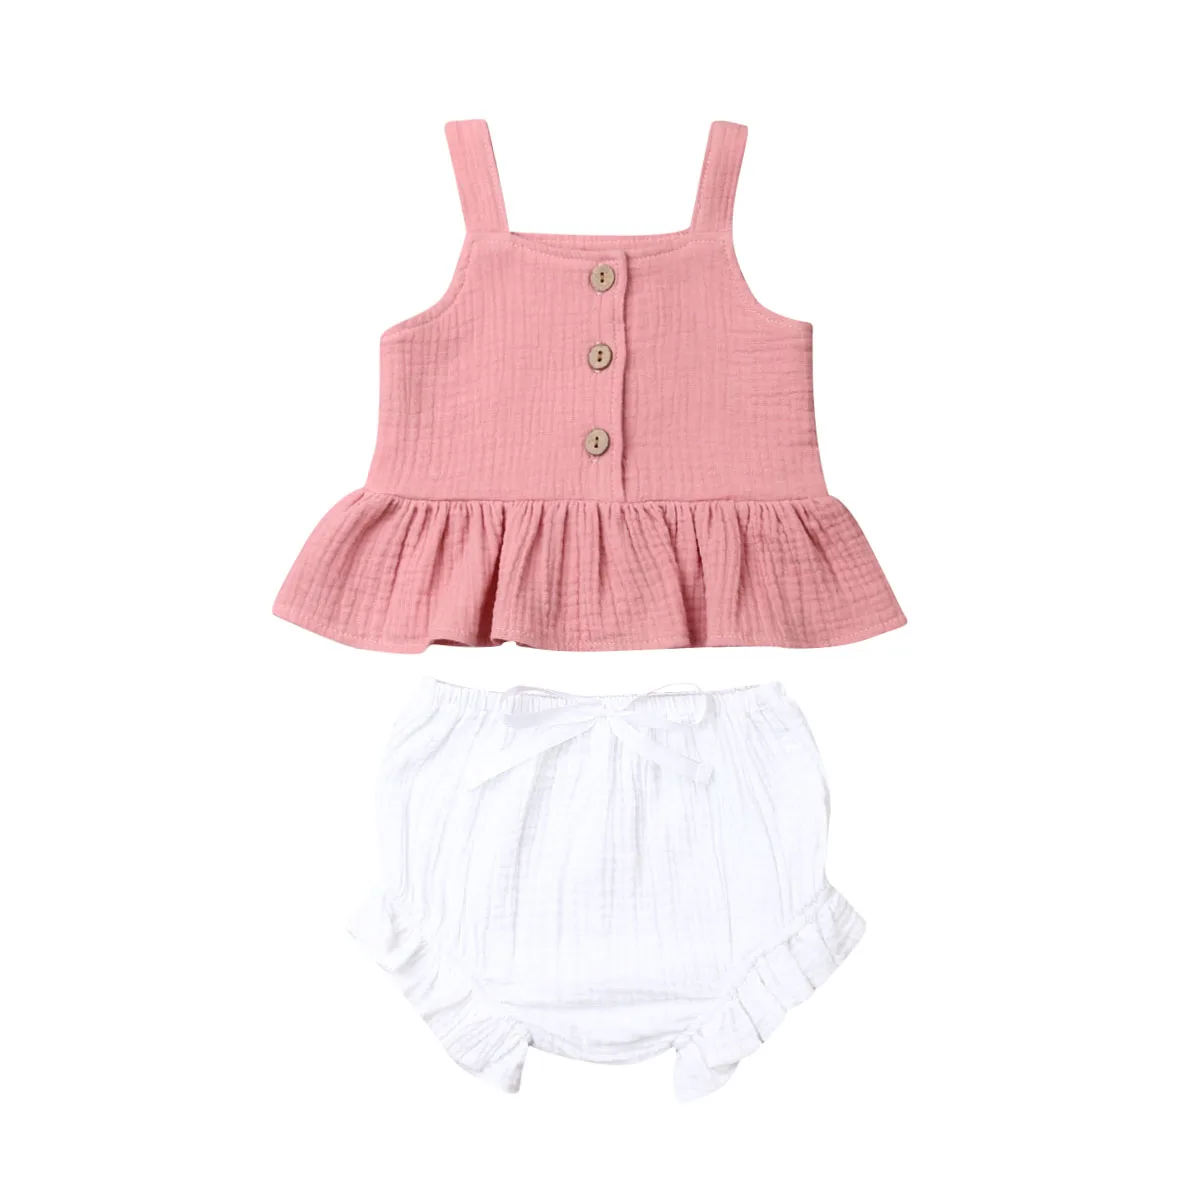 Г. Летняя одежда для малышей комплект из 2 предметов для новорожденных девочек, укороченный топ с открытыми плечами, Короткие штаны в полоску, комплект одежды, От 6 месяцев до 5 лет - Цвет: Pink White